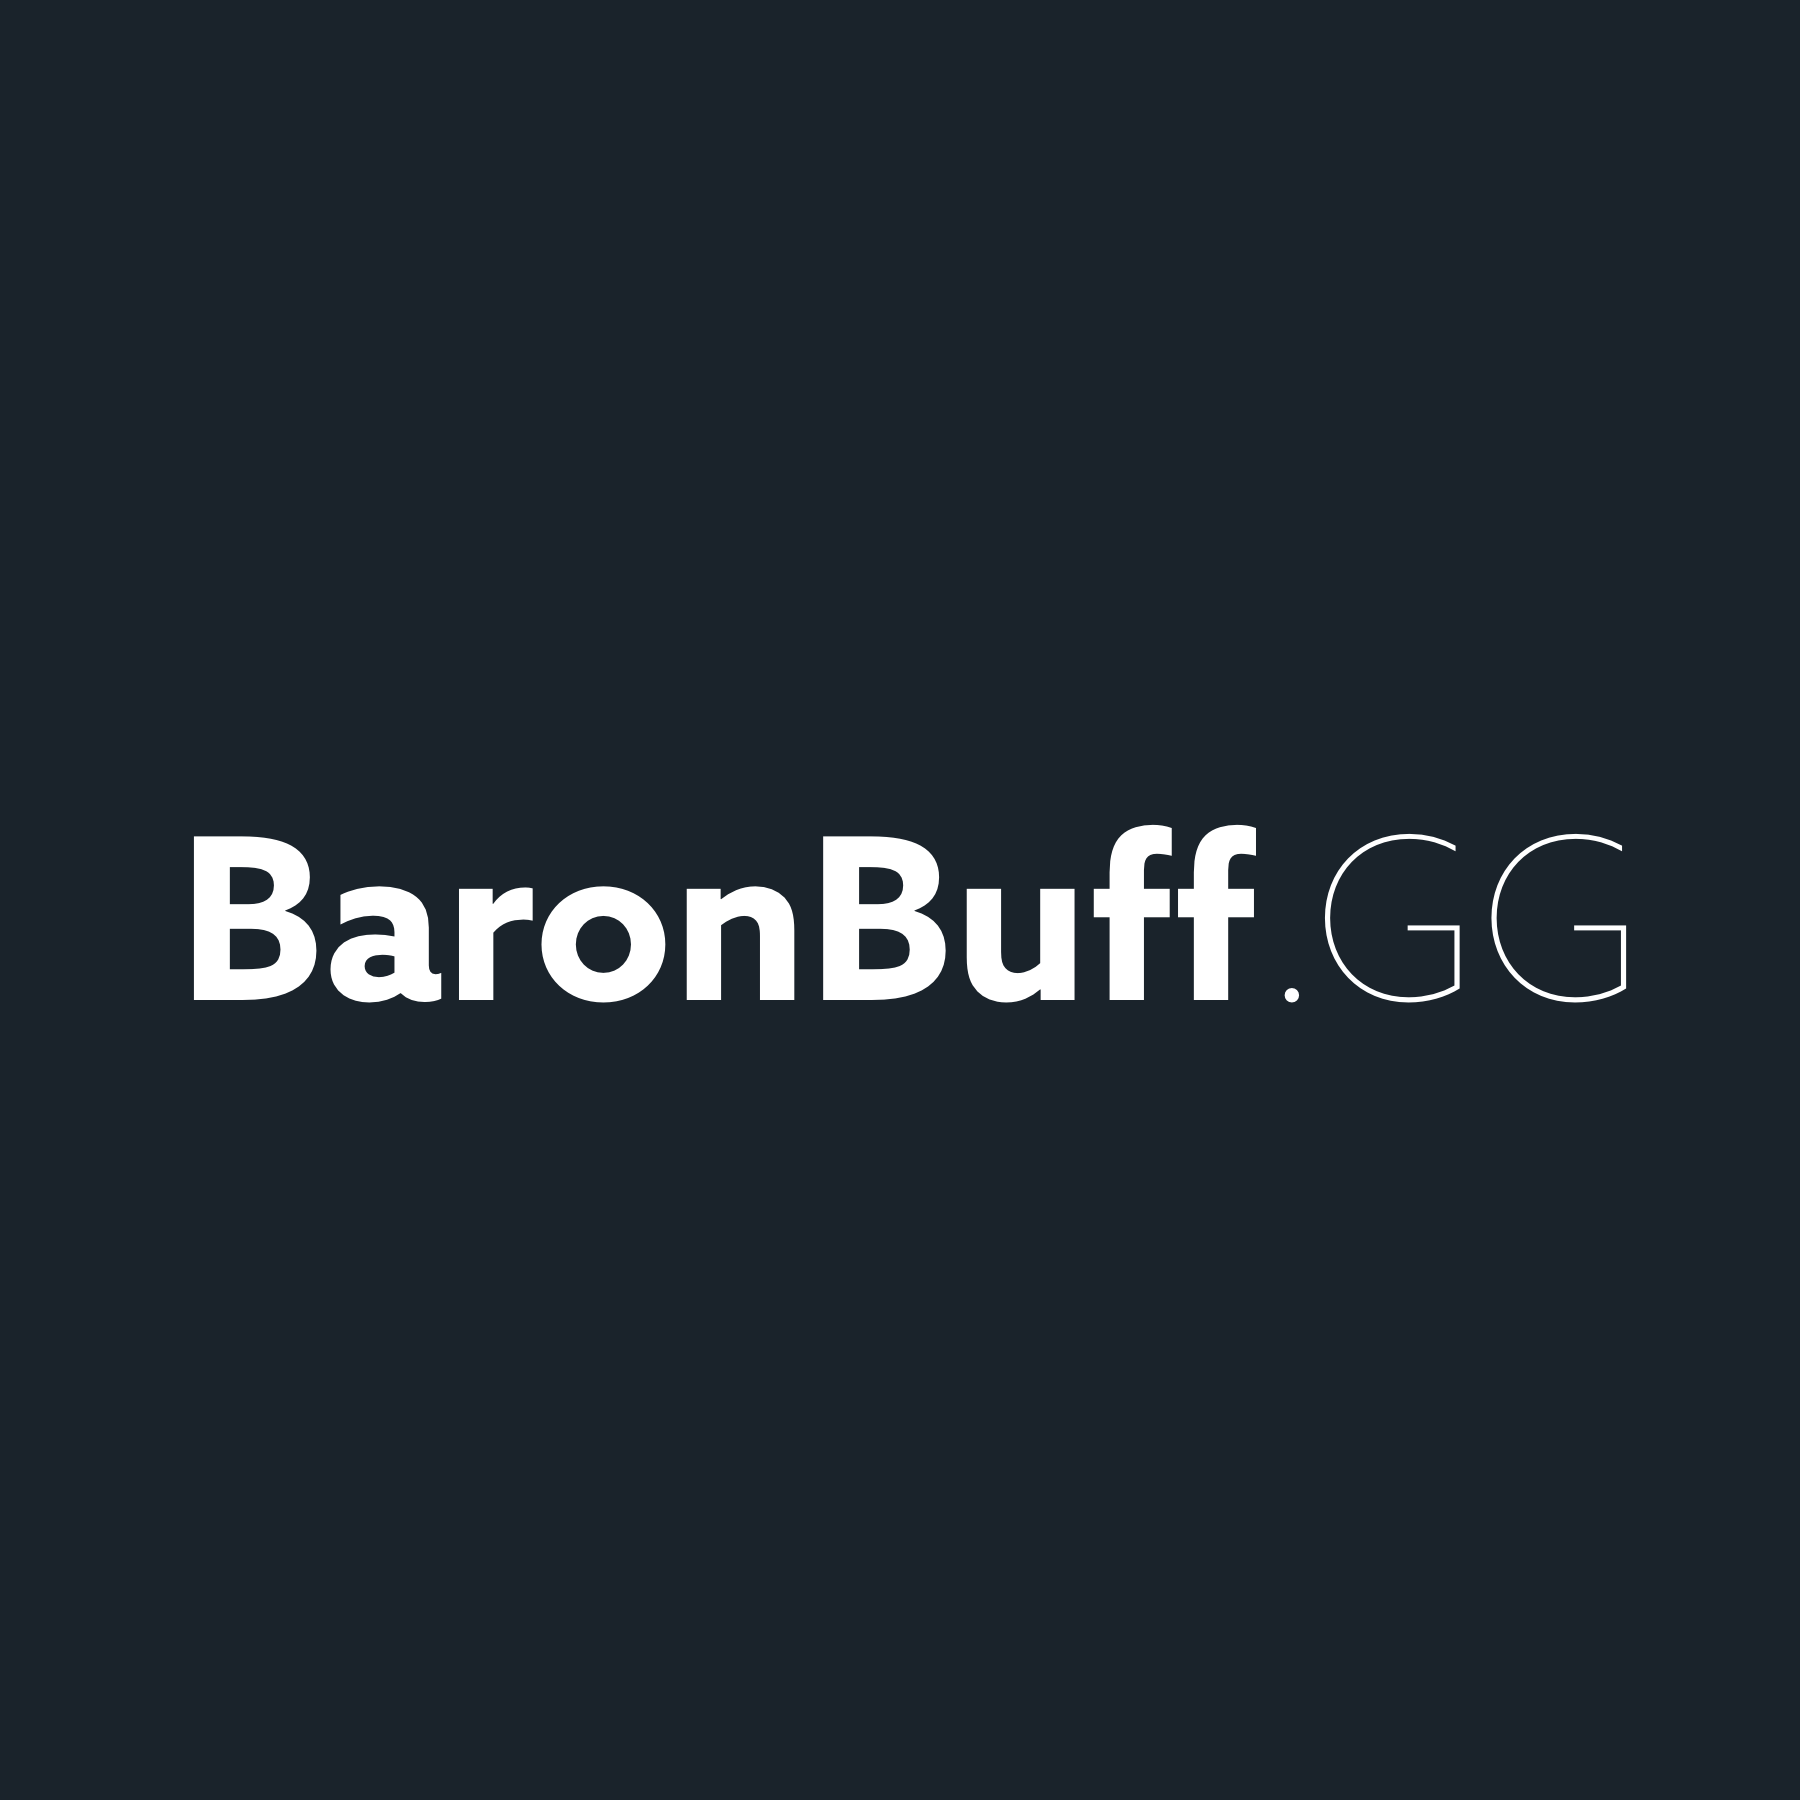 baronbuff.gg